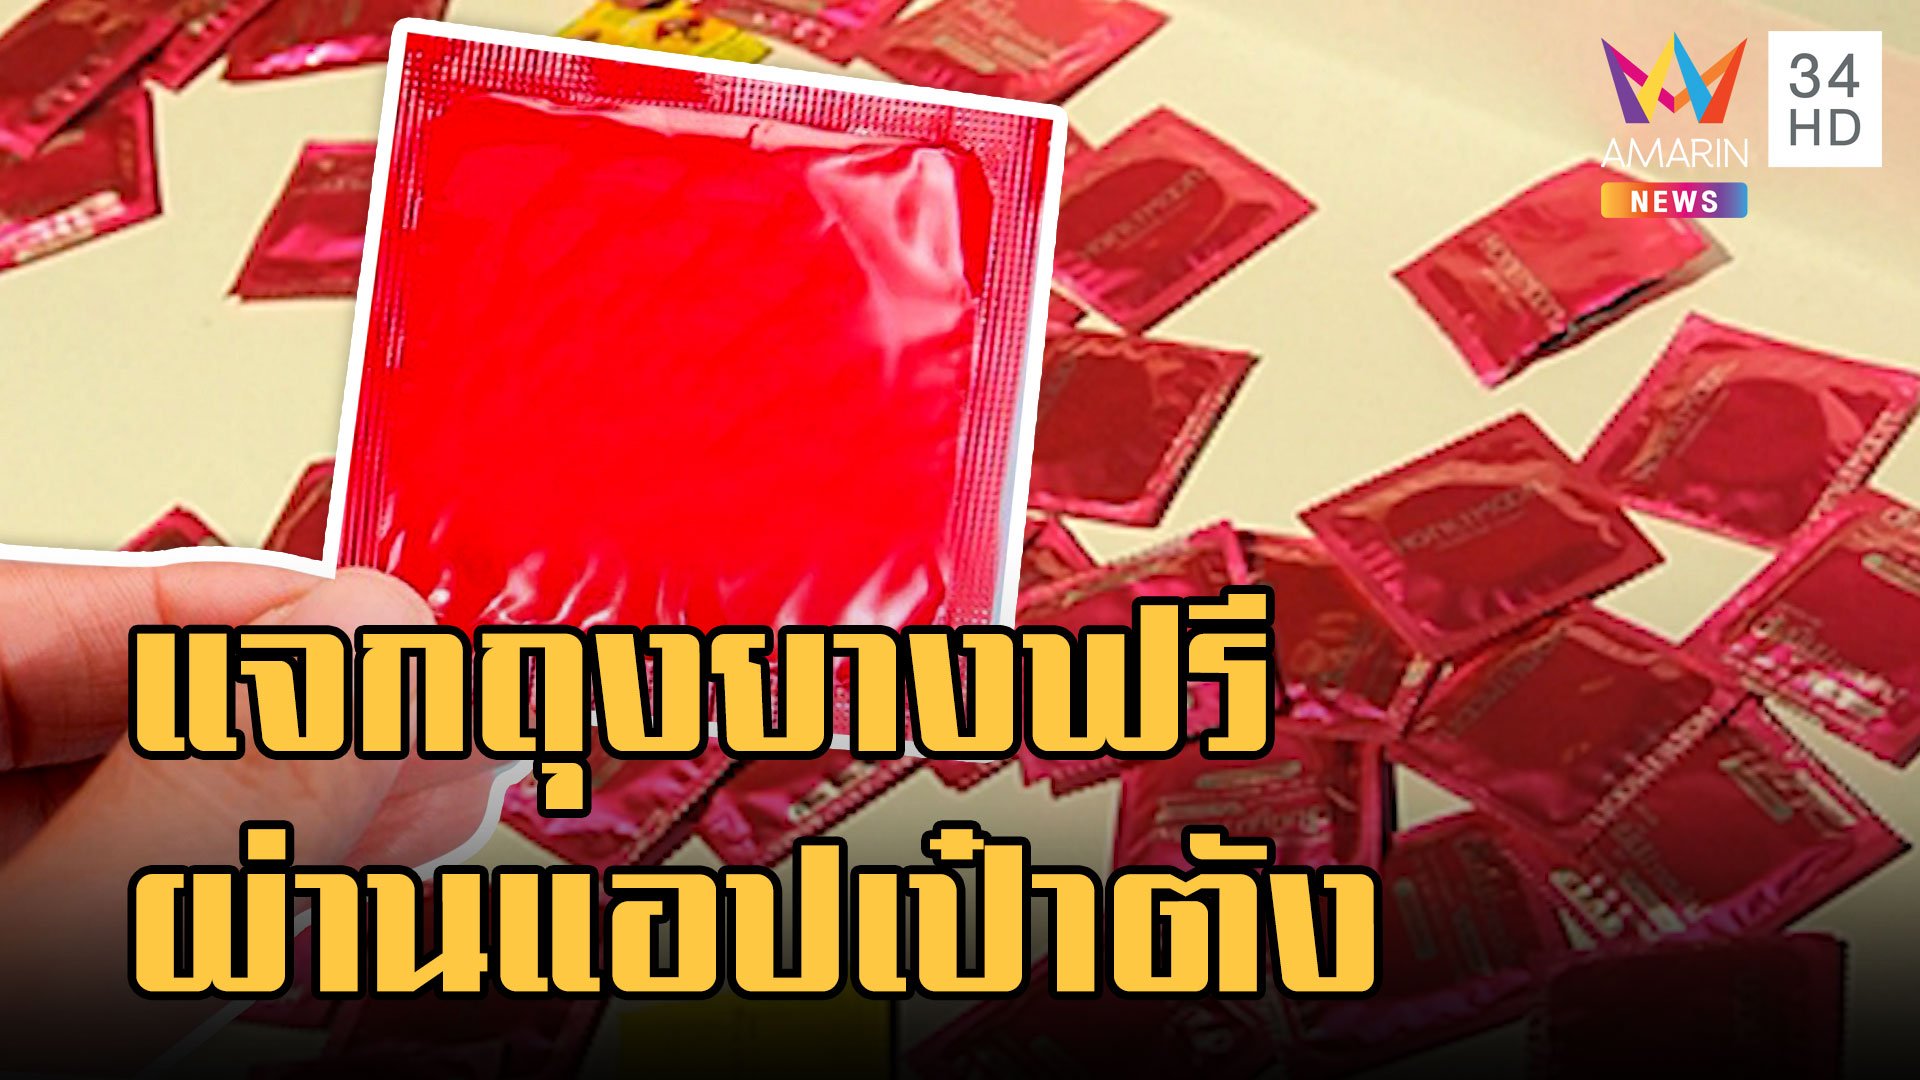 สปสช.แจกถุงยางอนามัยฟรีผ่านแอปฯ เป๋าตัง  | ข่าวเที่ยงอมรินทร์ | 24 ม.ค. 66 | AMARIN TVHD34